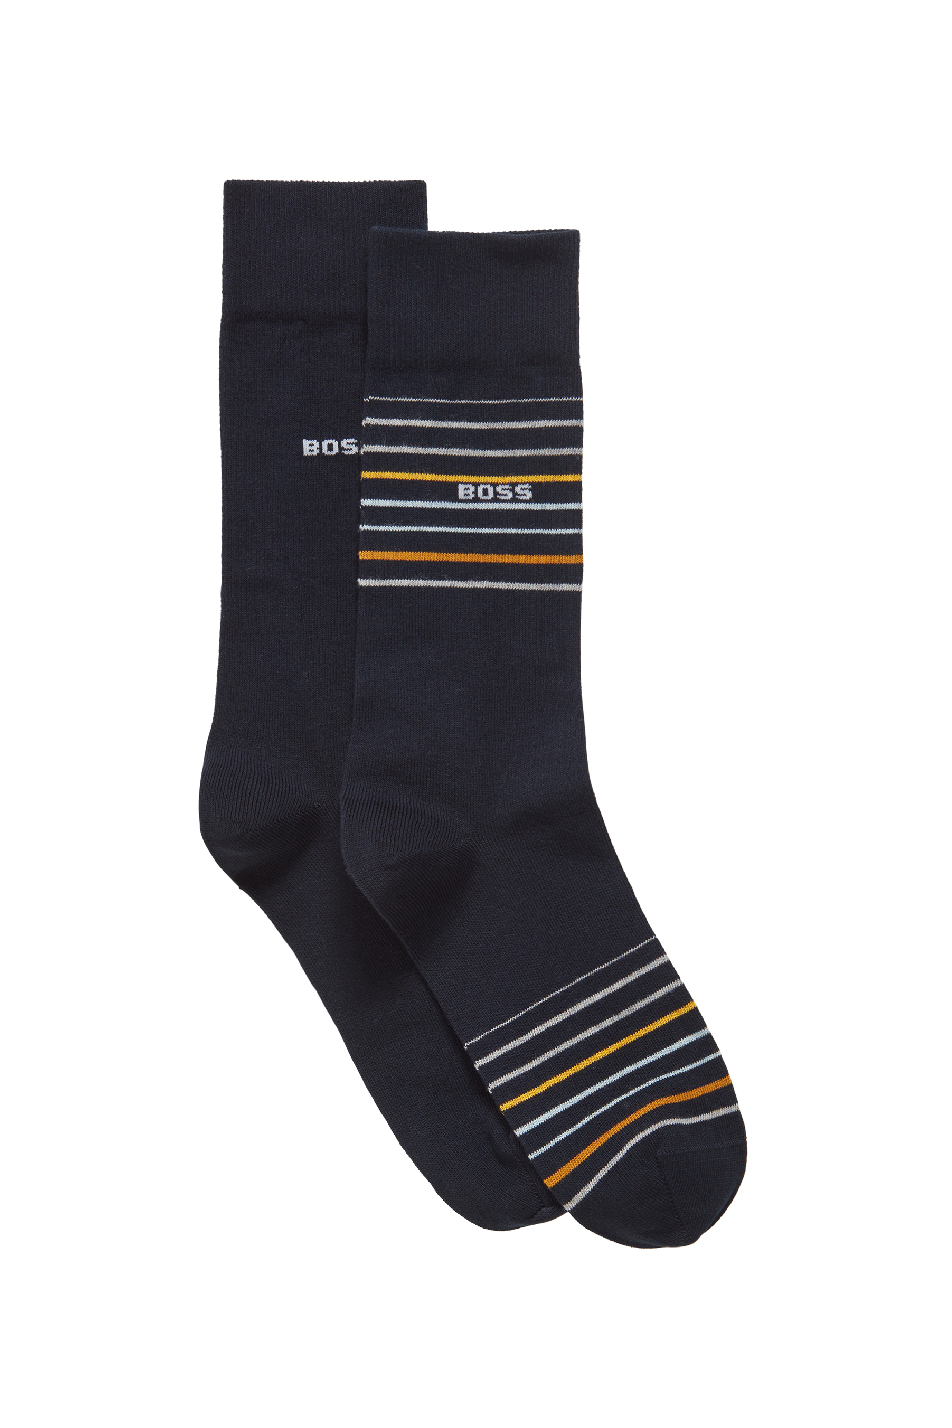 Boss 2 Pack Men's Stripe Sock